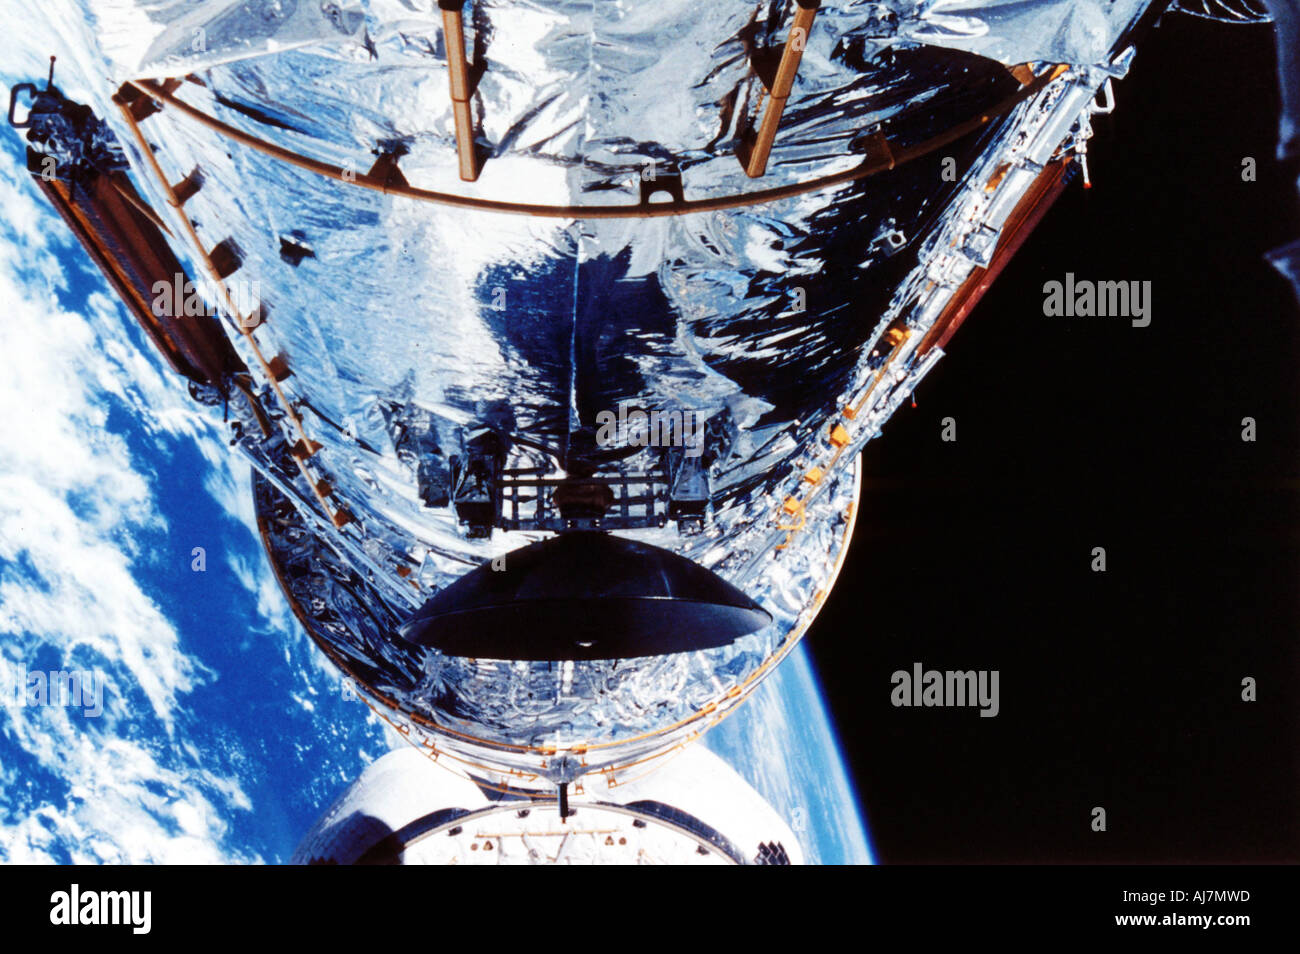 Il Telescopio Spaziale Hubble in orbita attorno alla Terra c1990s. Artista: sconosciuto Foto Stock